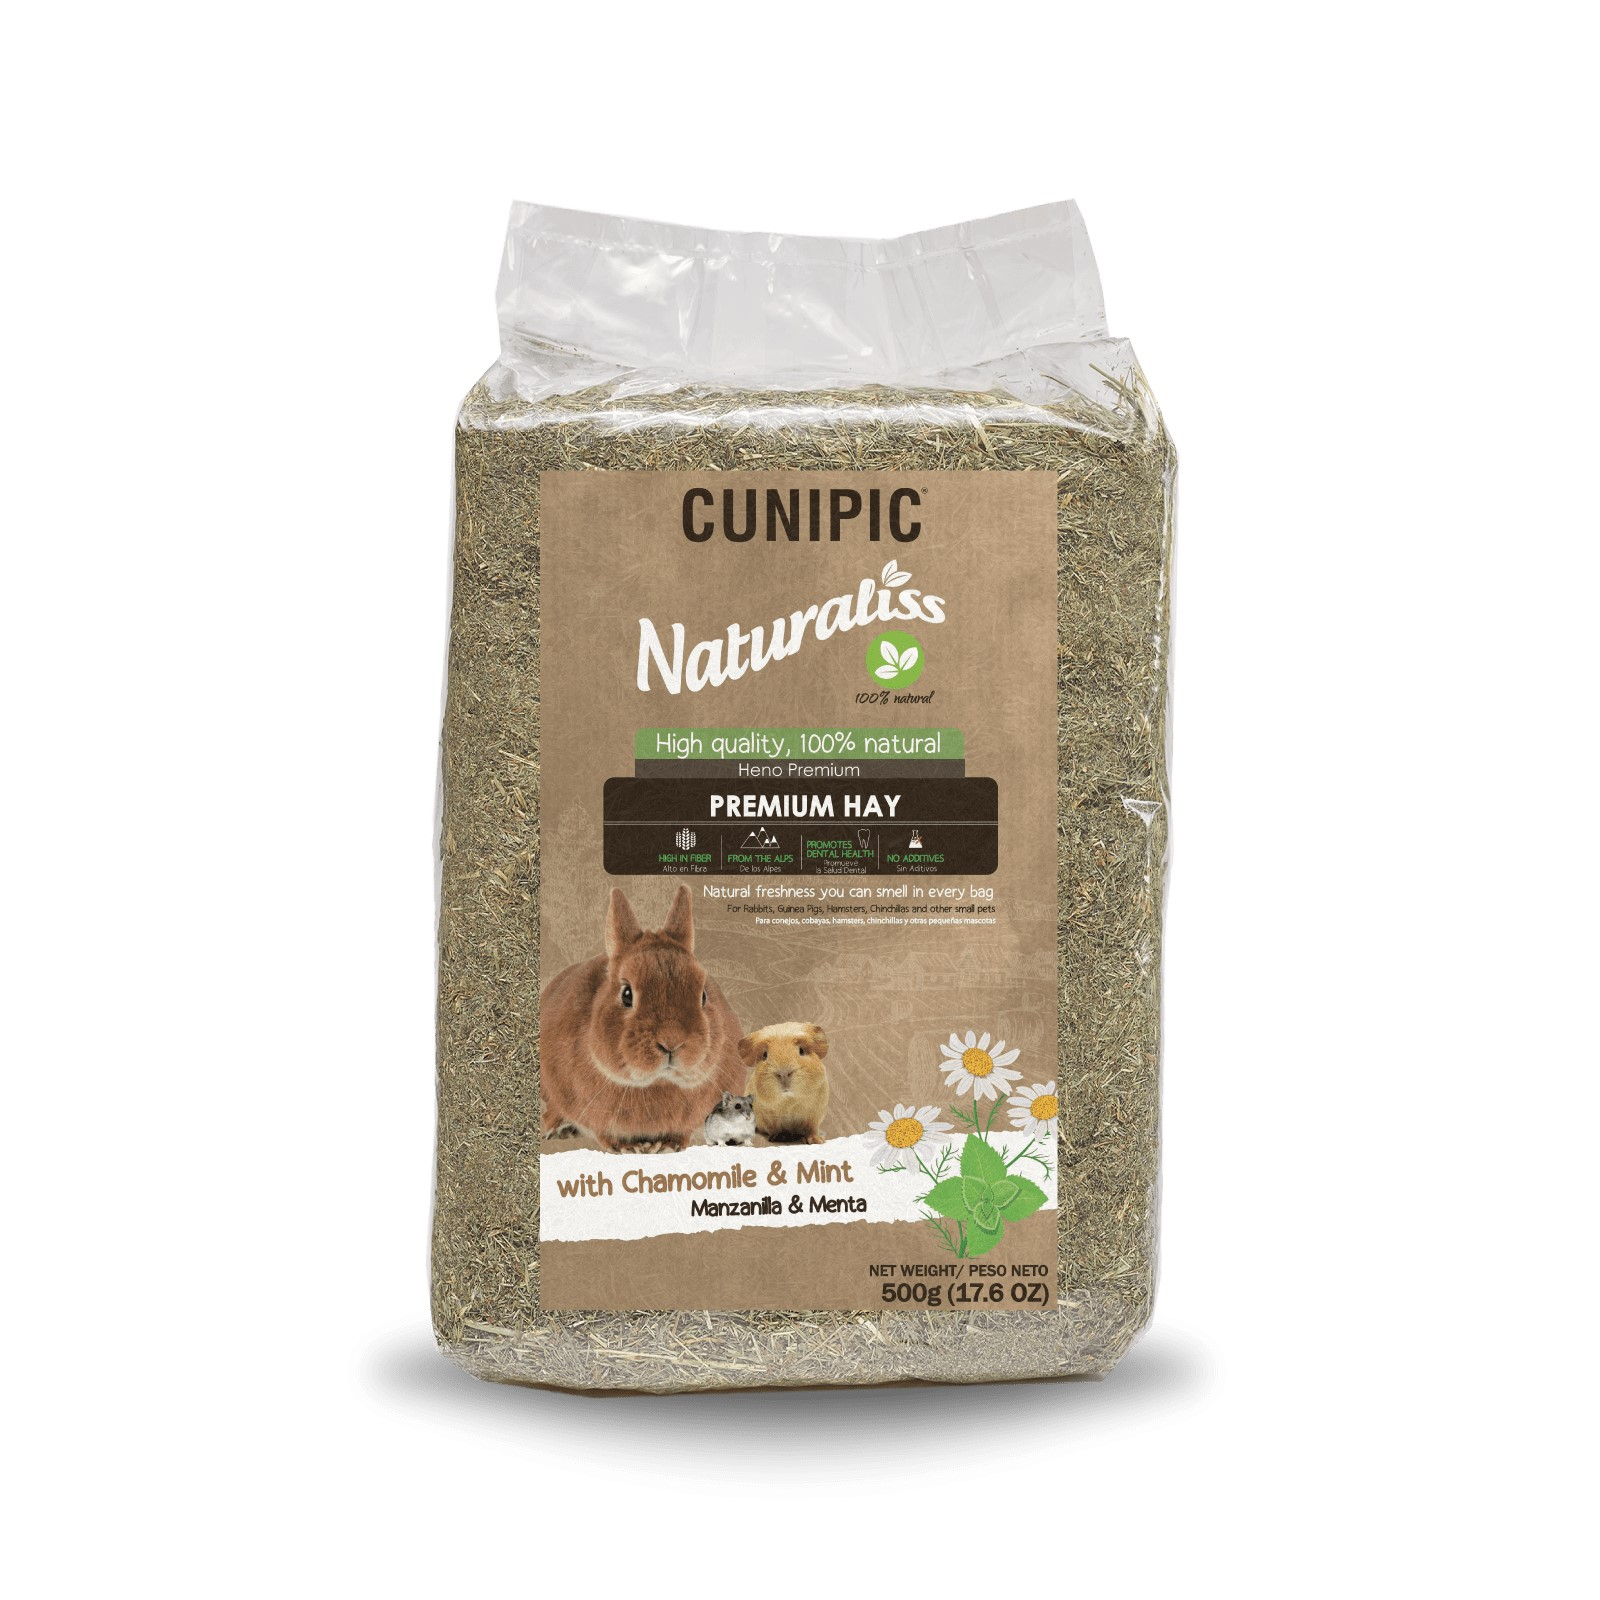 Cunipic Naturaliss Premium Hay Heno con manzanilla & menta para roedores y conejos